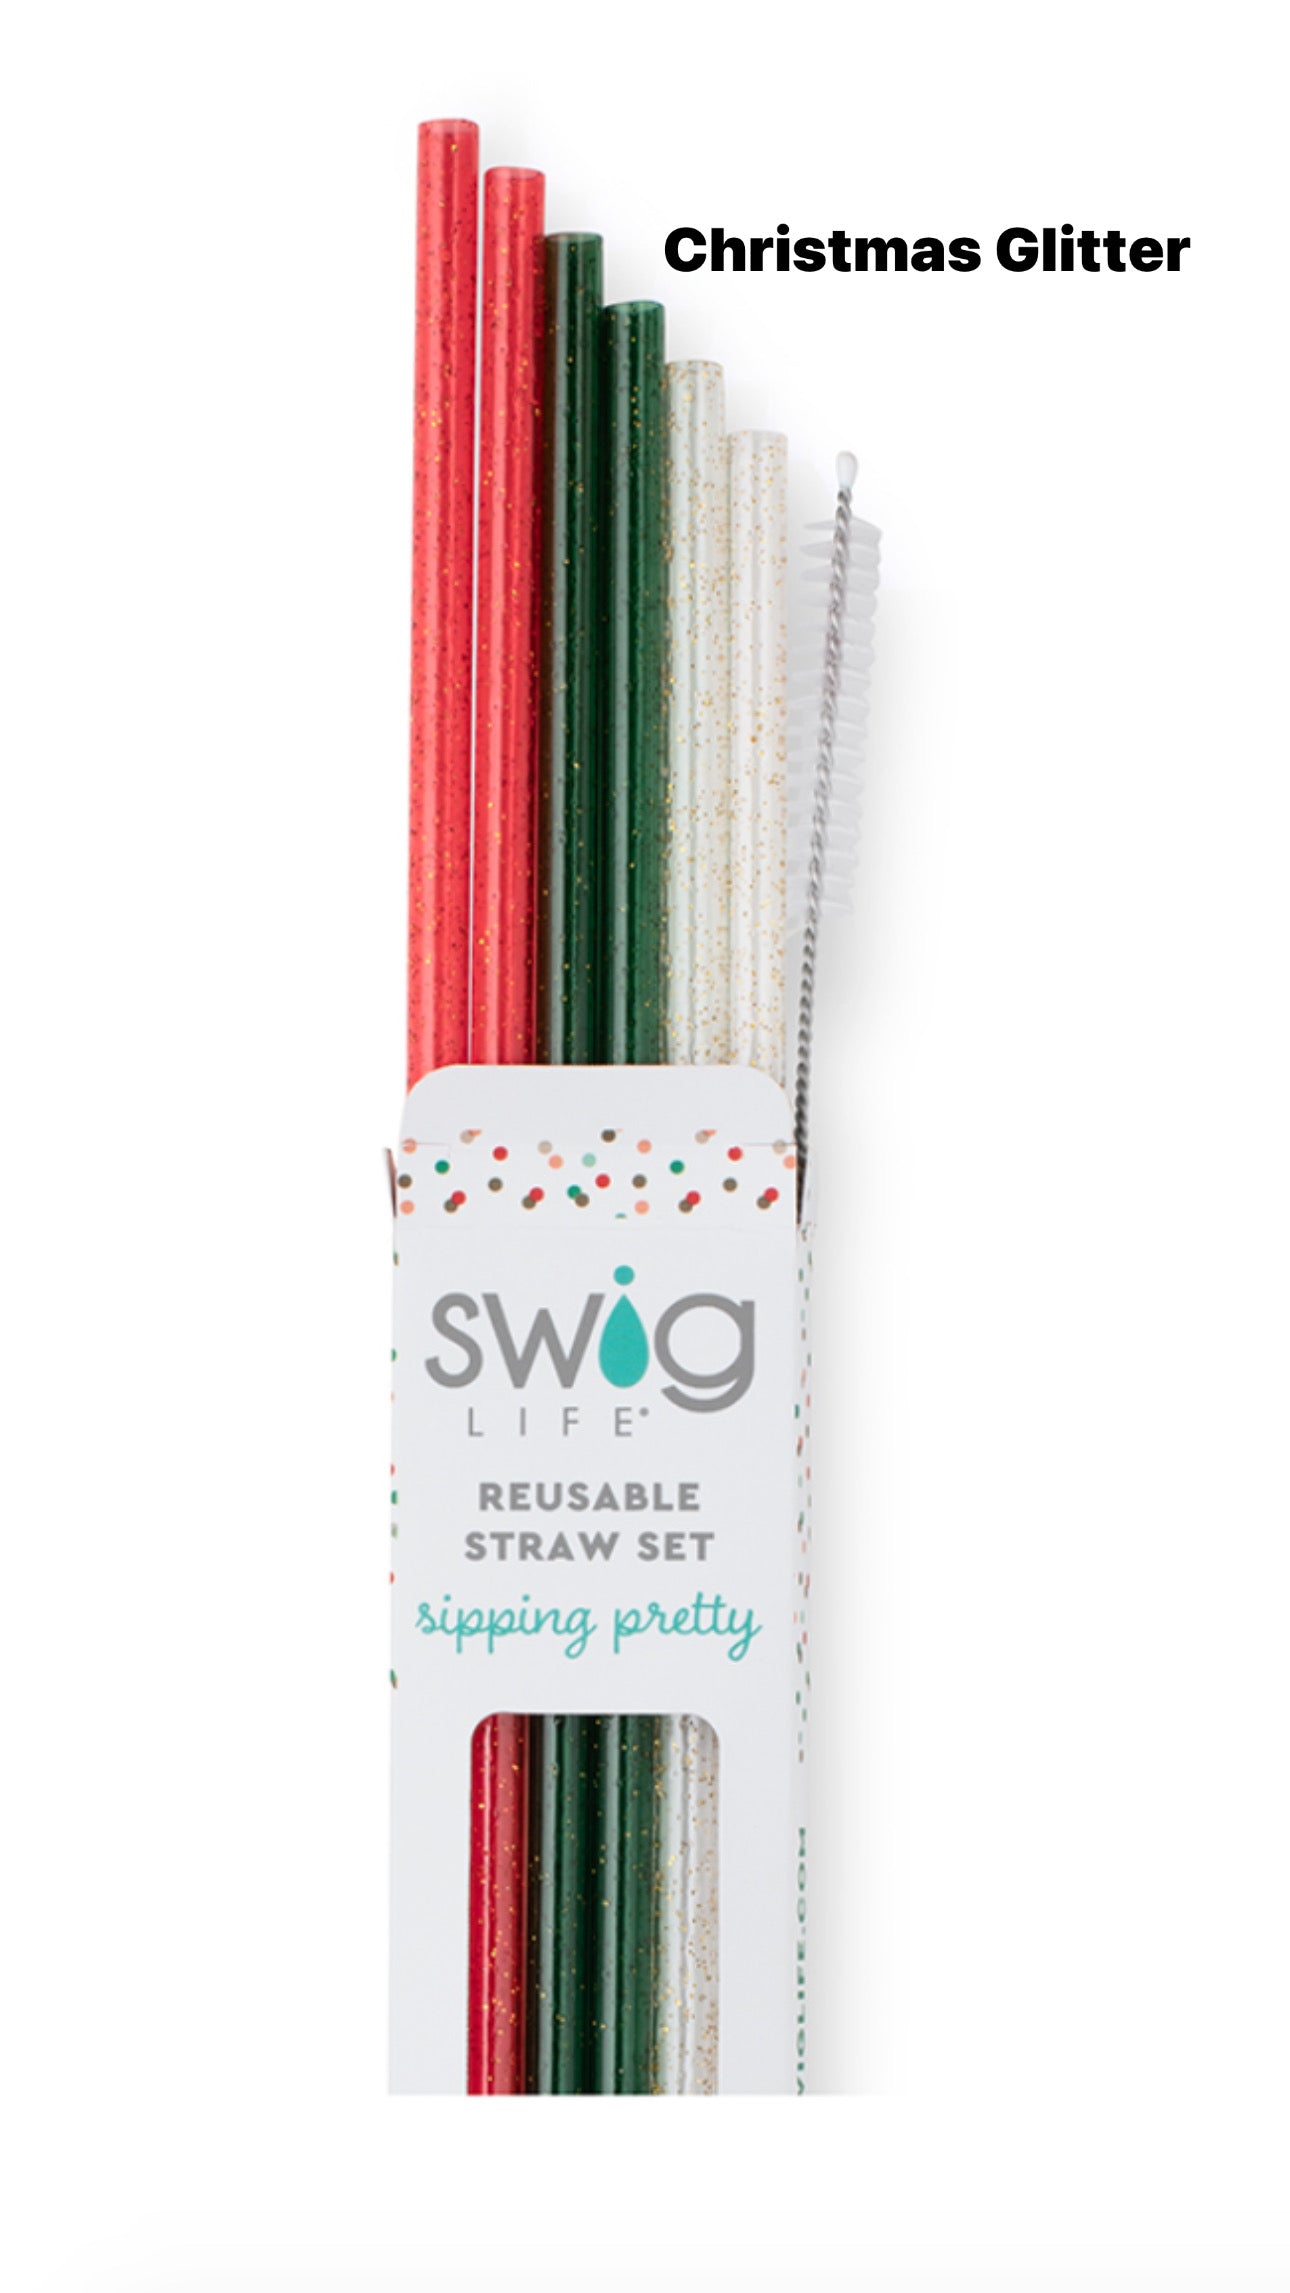 SWIG Christmas Reusable Straw Sets